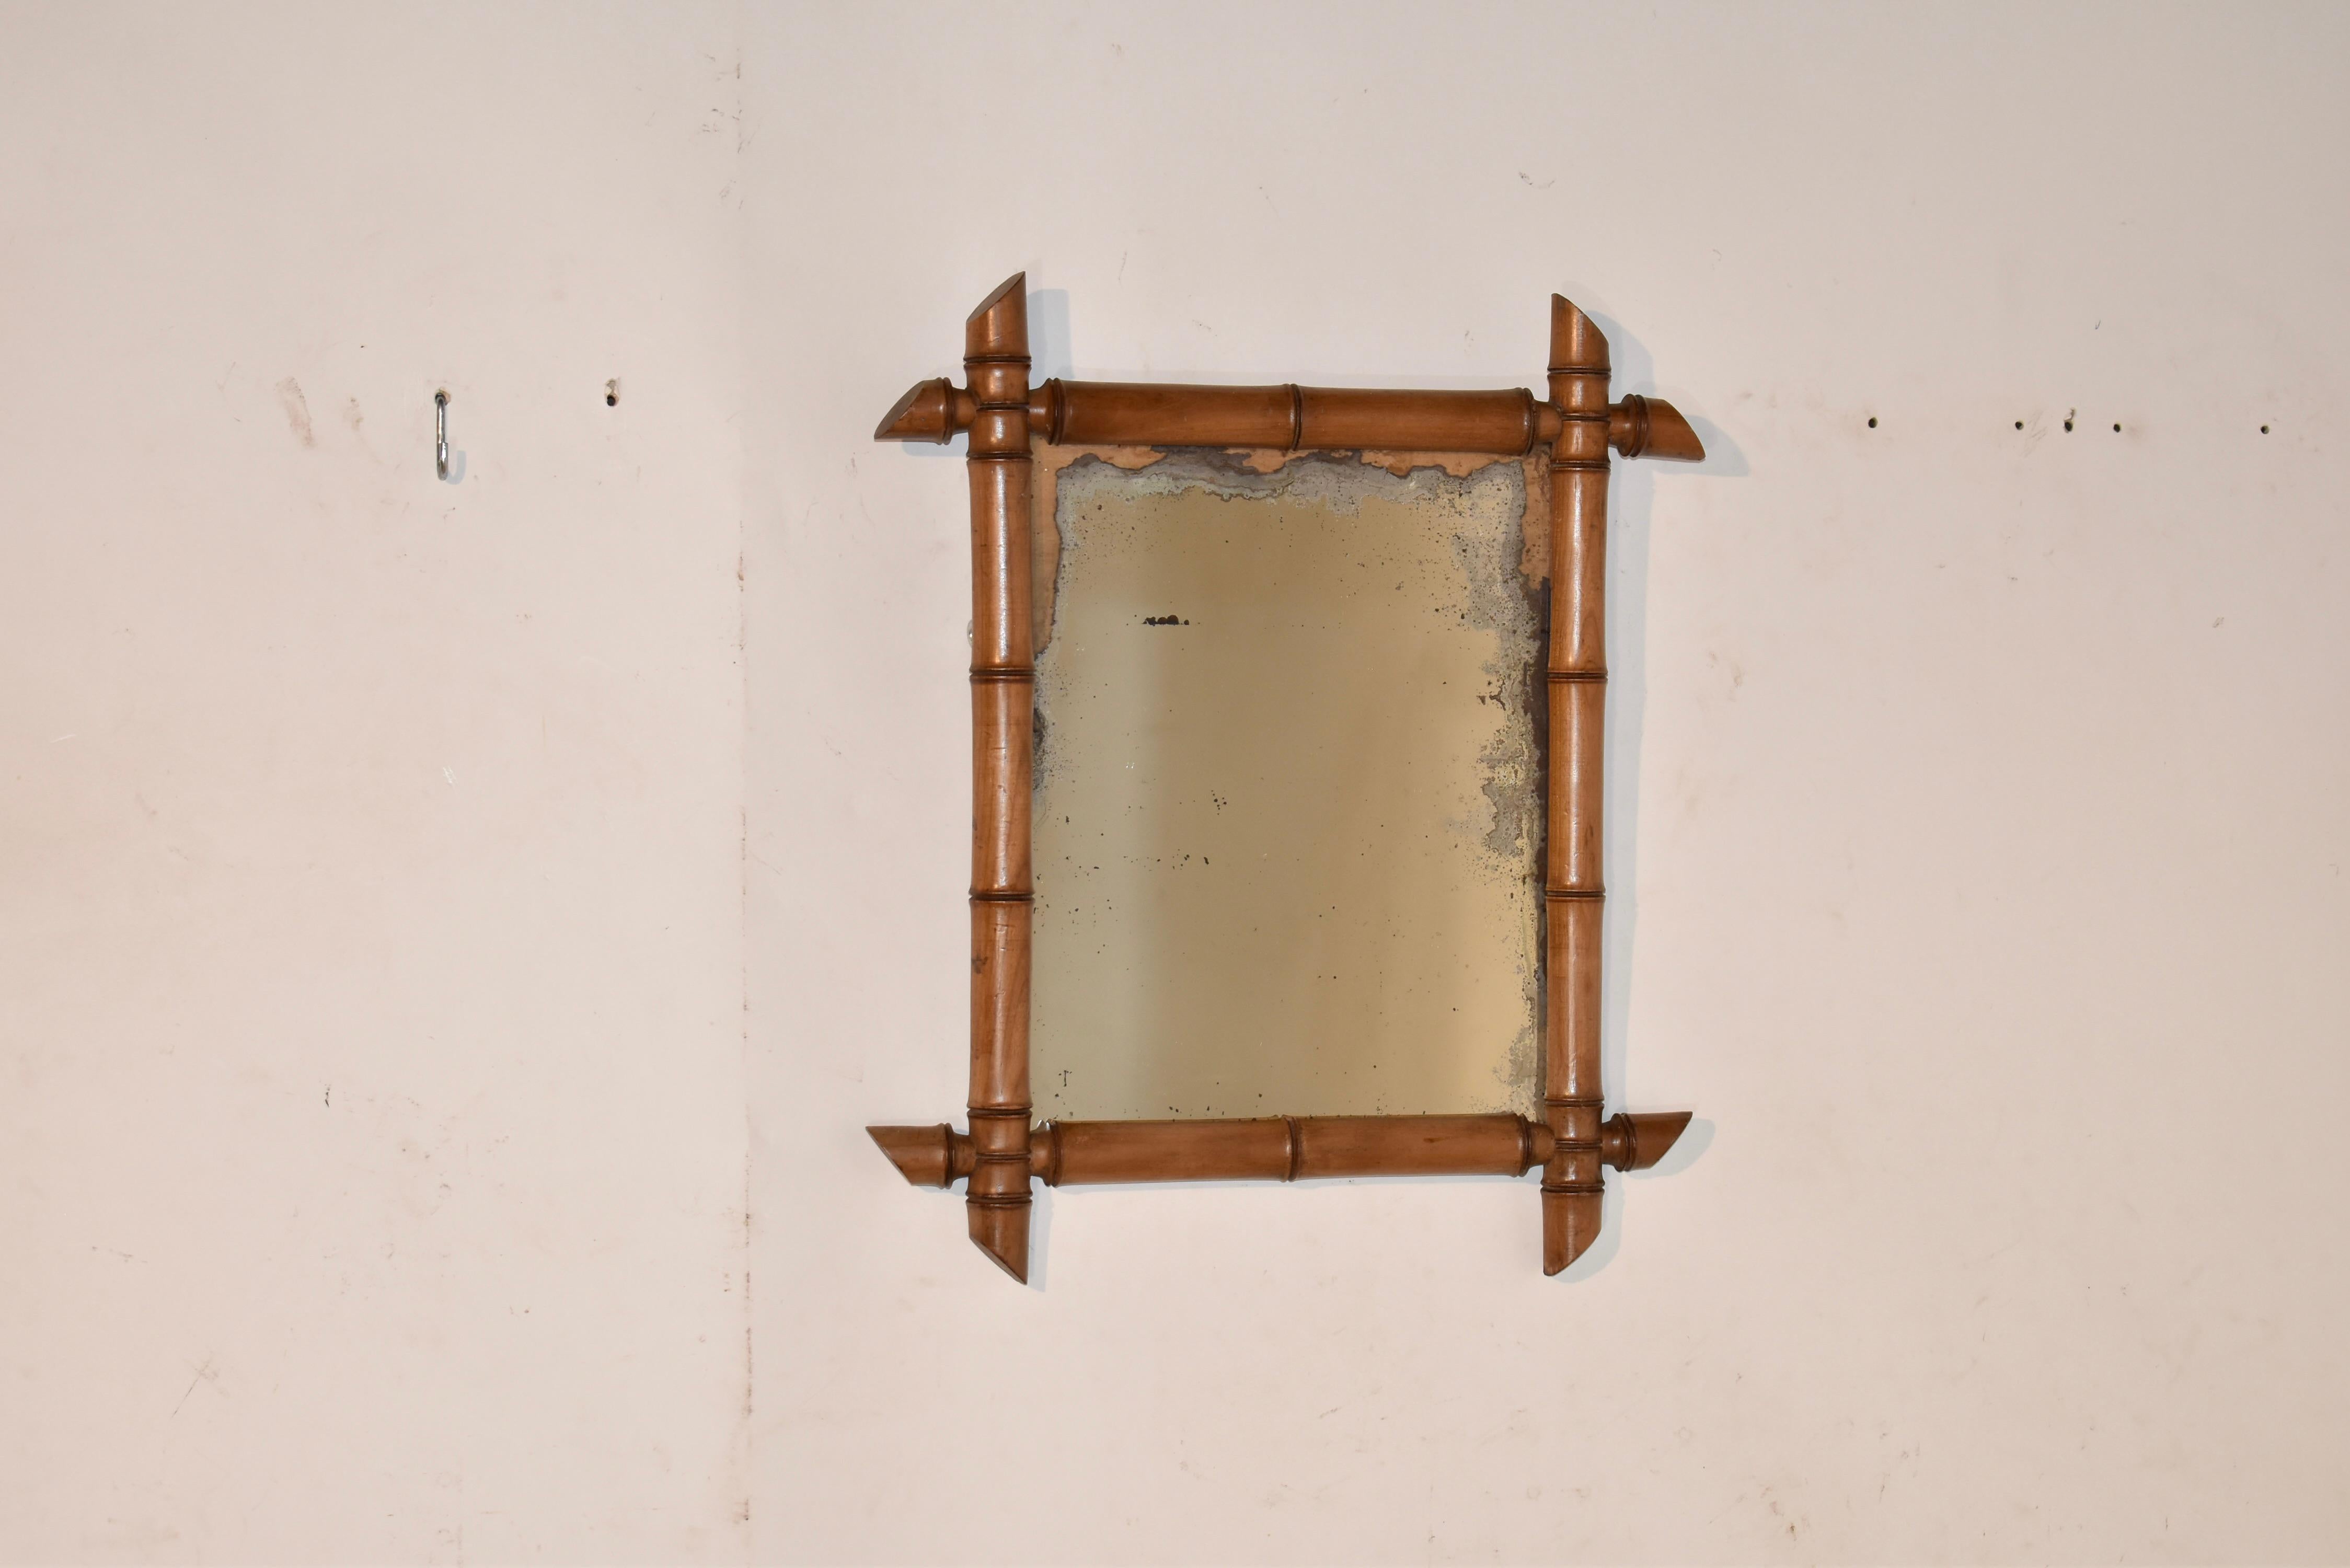 Miroir mural français en faux bambou.  le cadre du miroir est tourné à la main pour avoir l'apparence d'un faux bambou, et il entoure ce qui semble être le miroir d'origine, qui a perdu une grande partie de sa finition au mercure.  Ce miroir a